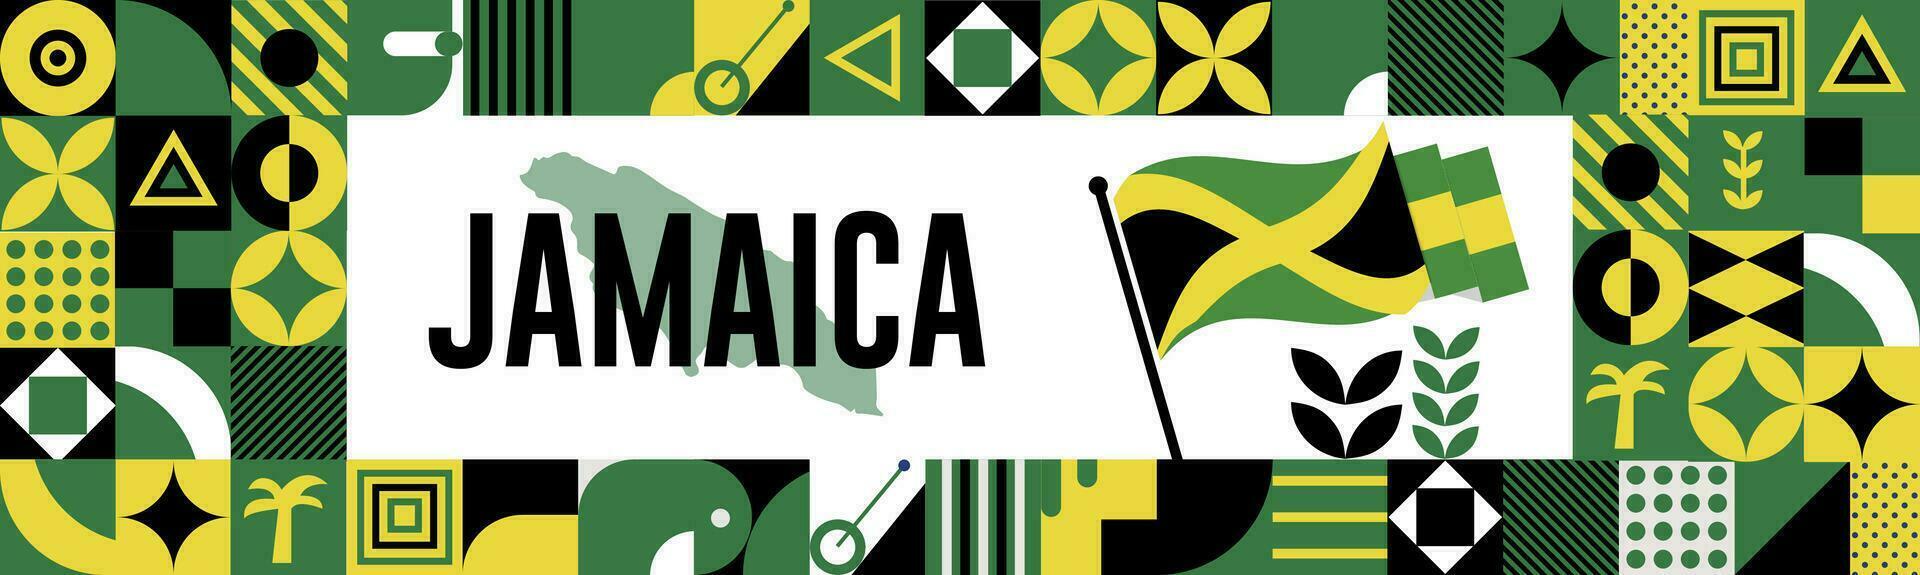 Jamaica nacional dia bandeira com mapa, bandeira cores tema fundo e geométrico abstrato retro moderno colorido Projeto com elevado mãos ou punhos. vetor